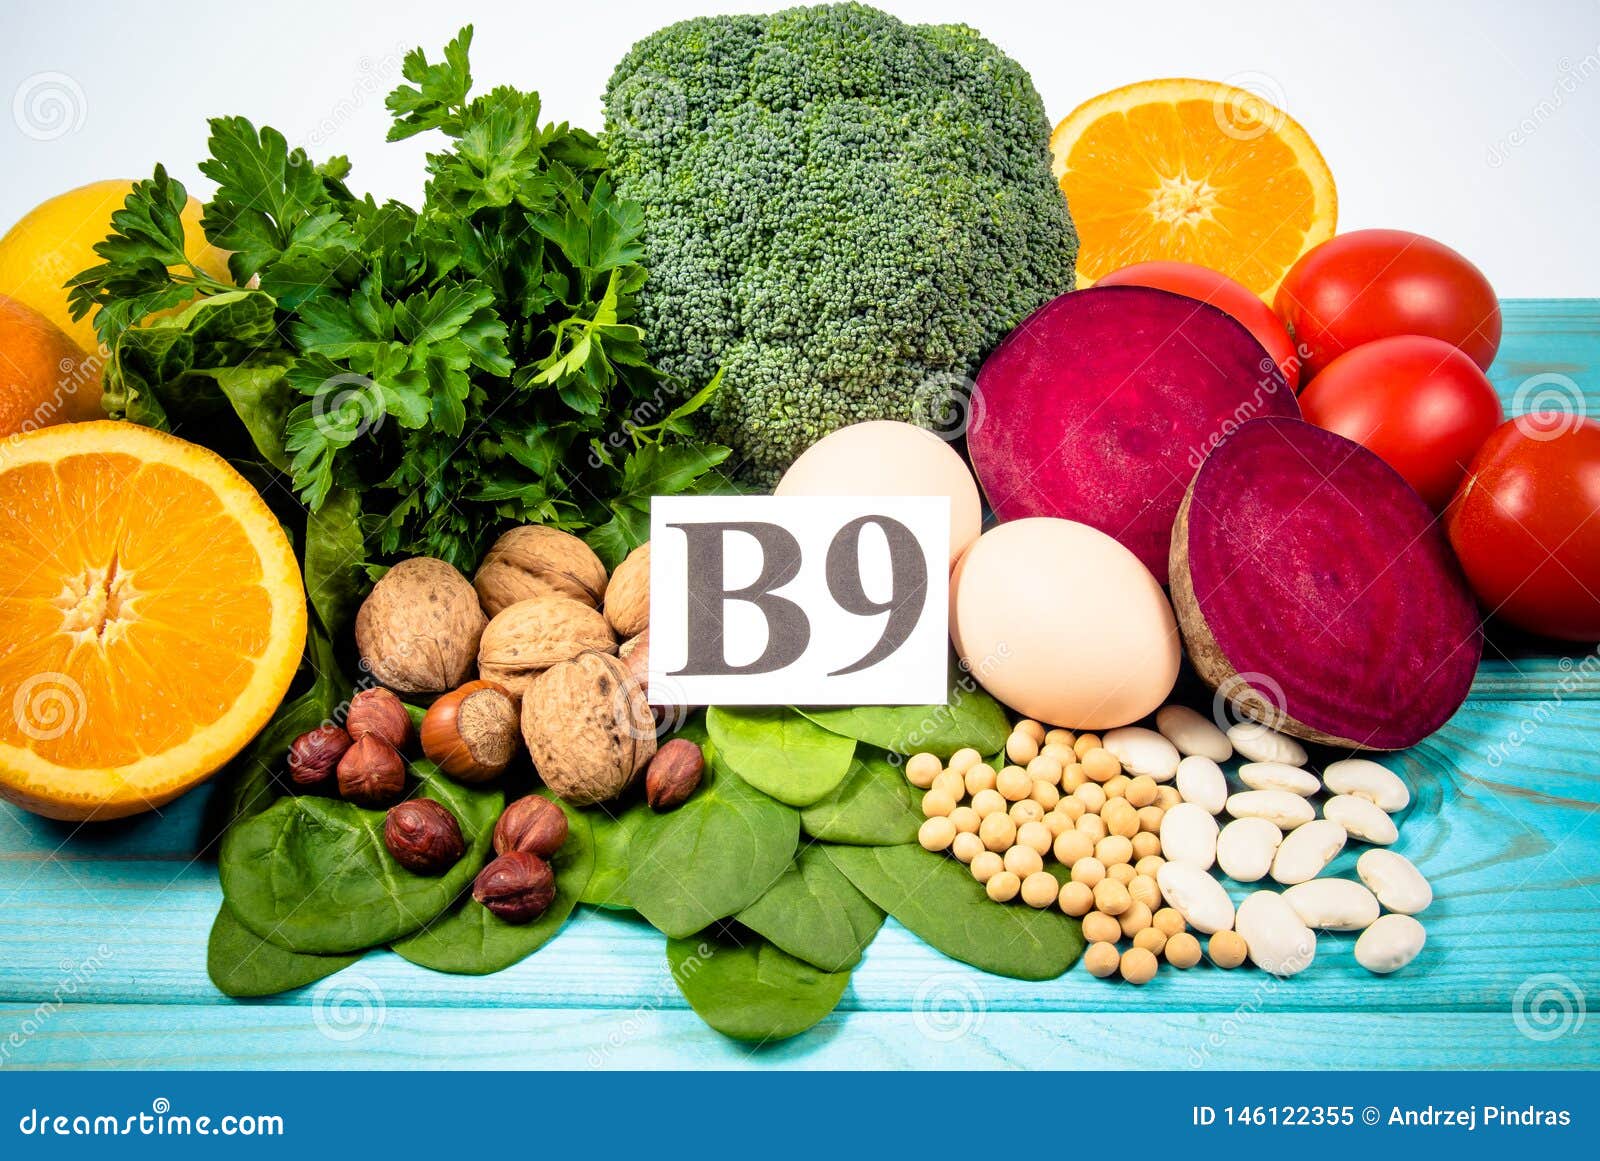 Витамин b9 продукты. Витамин в9. Витамин b9. Источники витамина b9. Витамин в9 продукты.